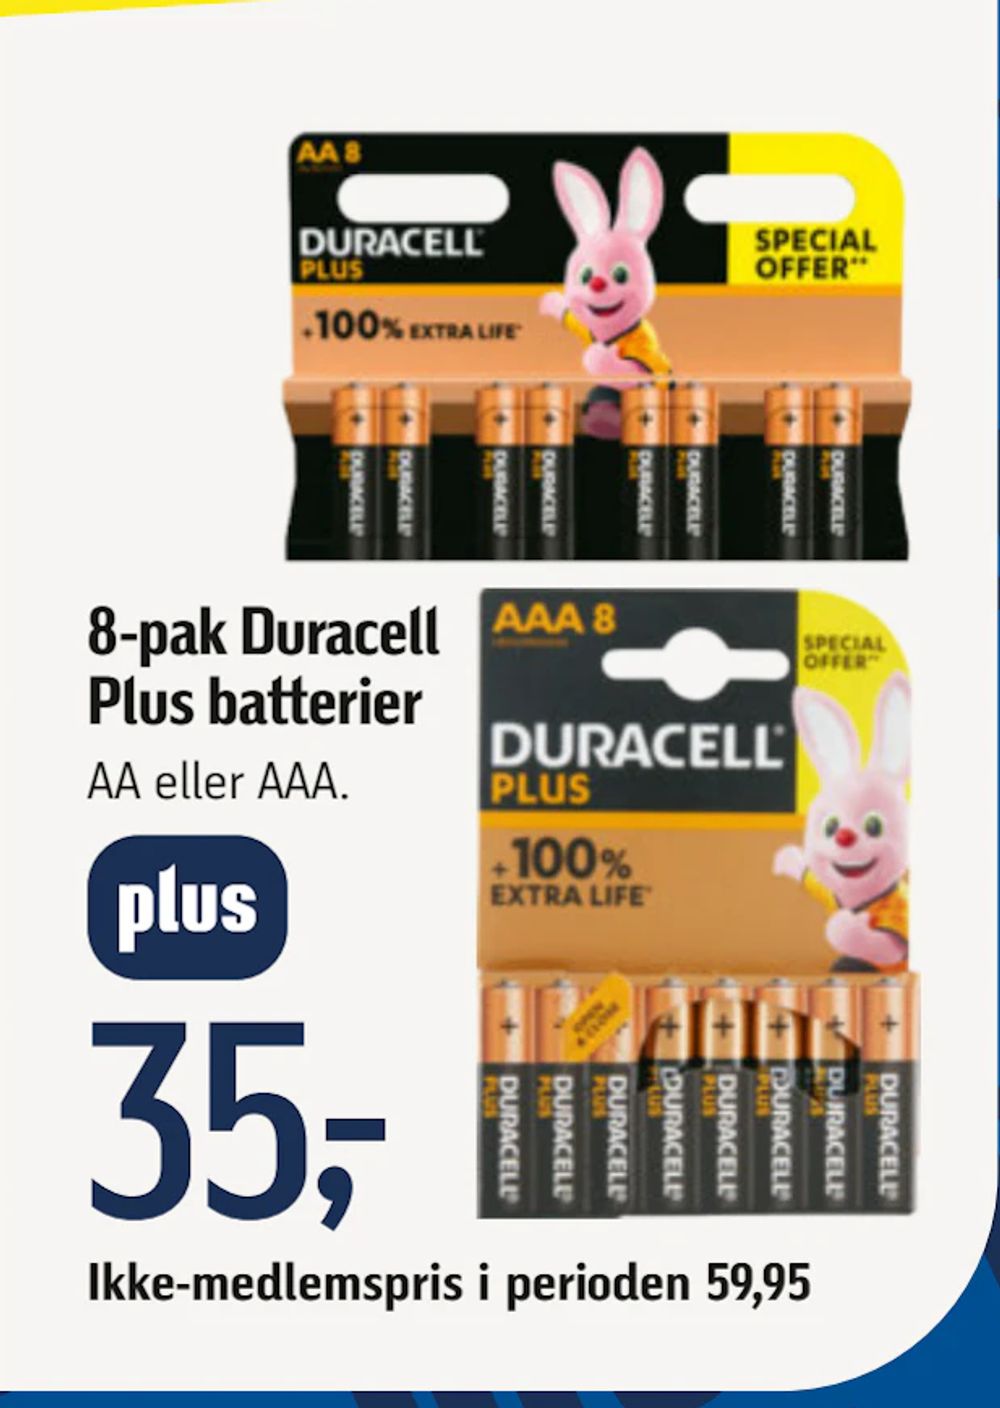 Tilbud på 8-pak Duracell Plus batterier fra føtex til 59,95 kr.